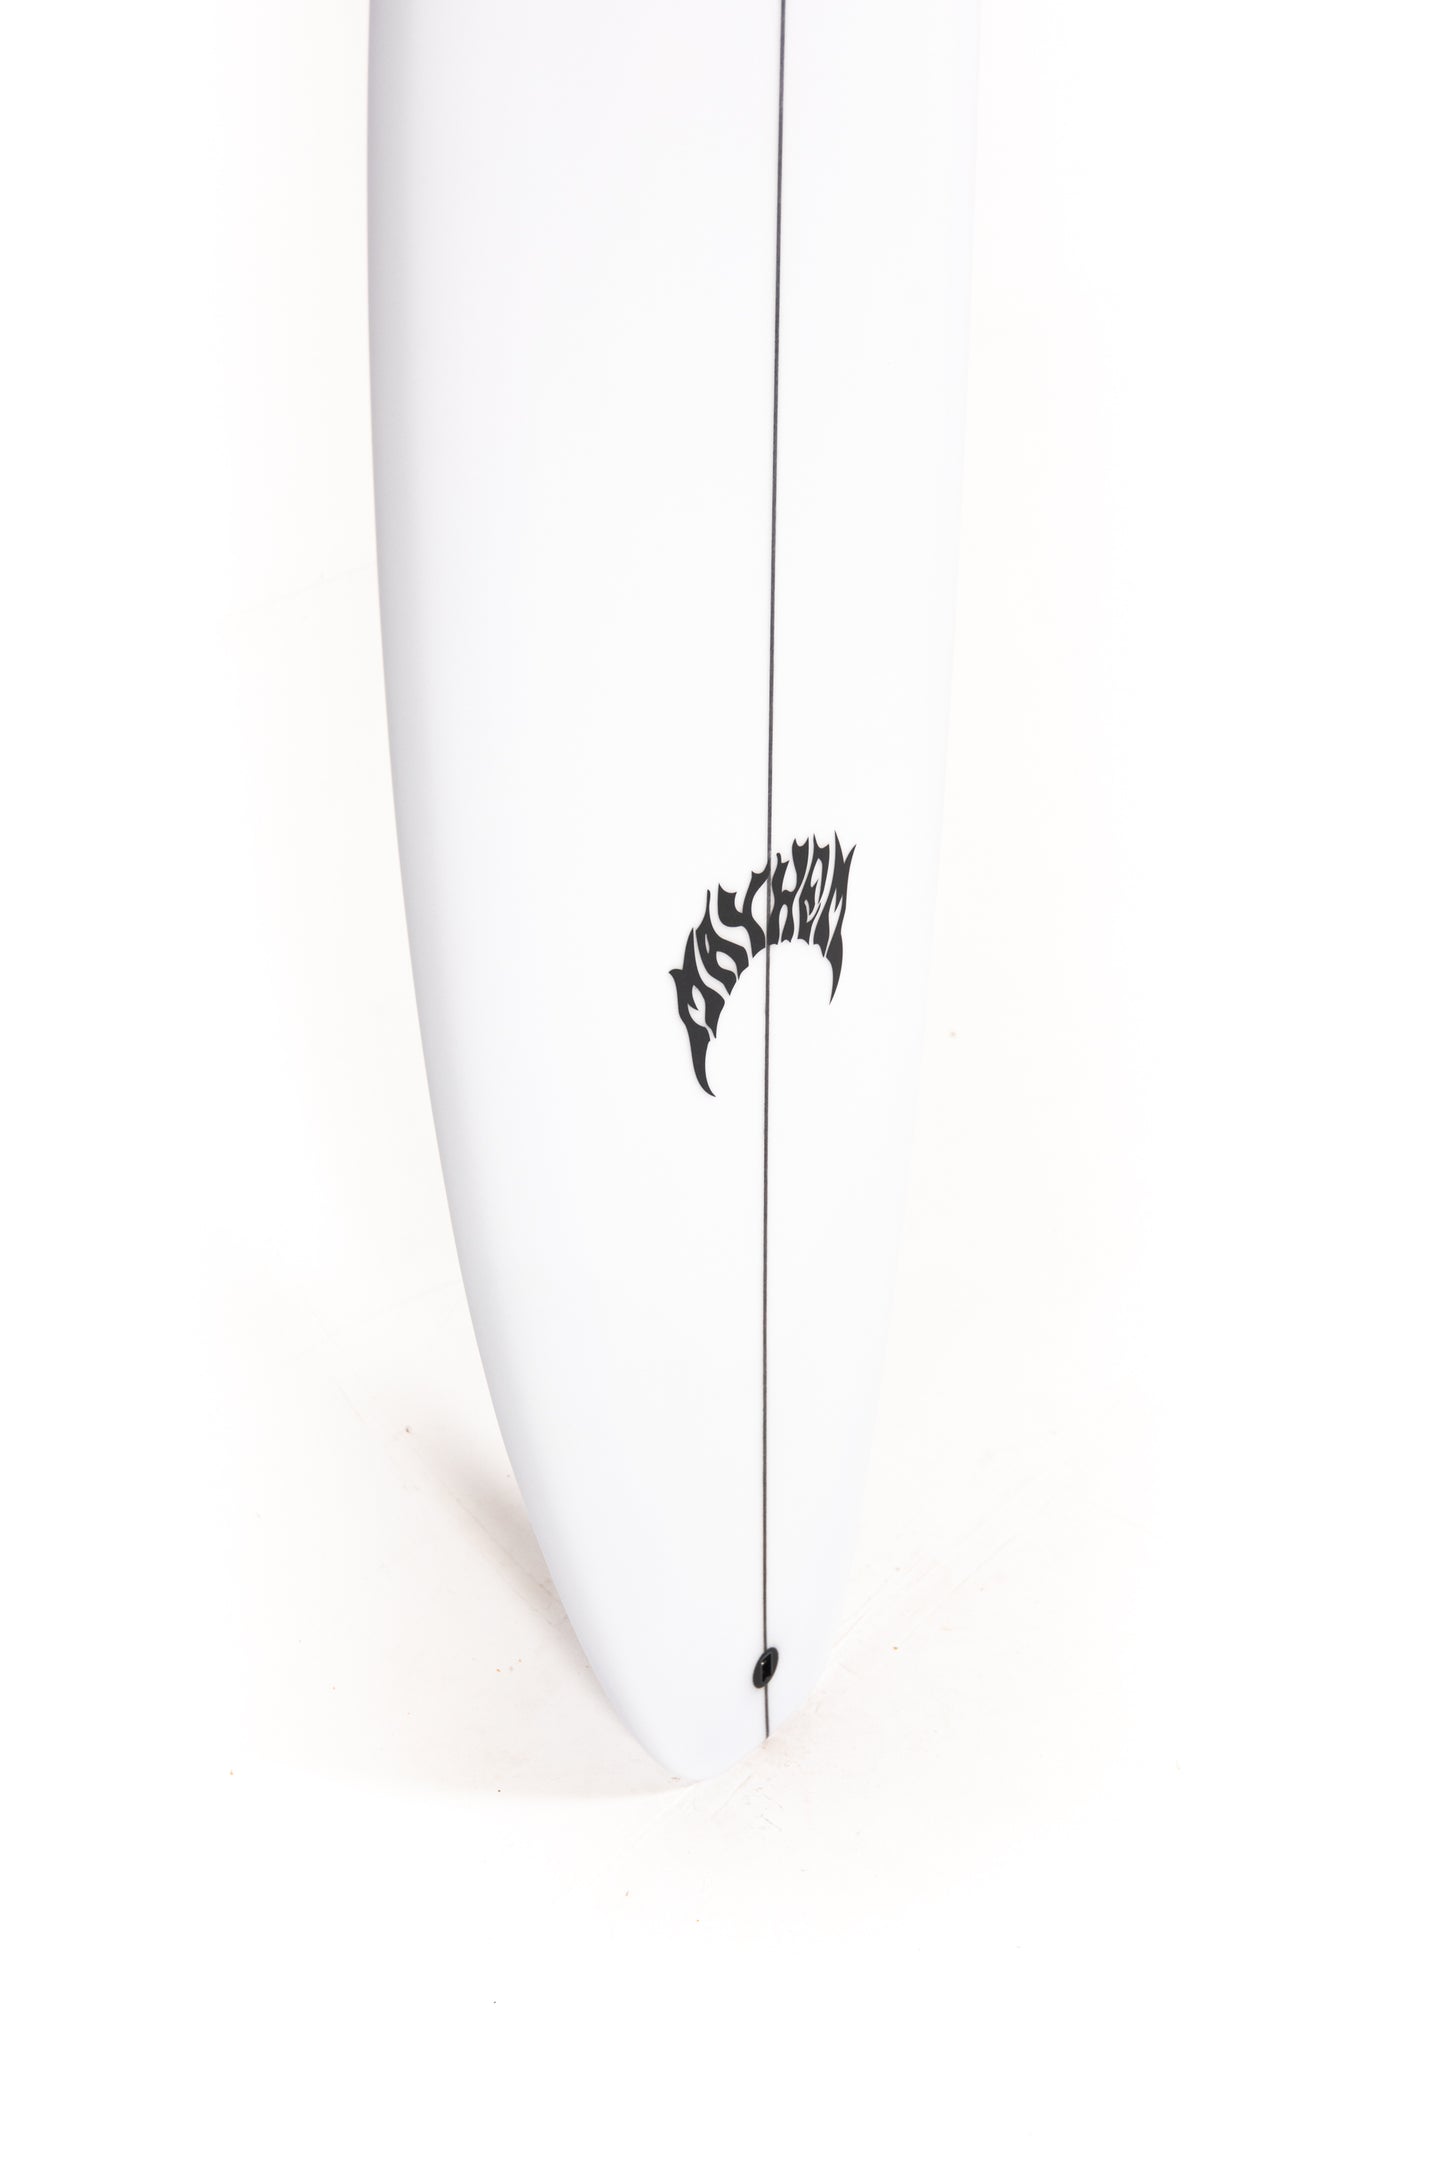 
                  
                    Pukas Surf Shop - Lost Surfboard - 3.0_STUB DRIVER by Matt Biolos - 5’8” x 18.75" x 2.30" - 26.26L - MH18873
                  
                